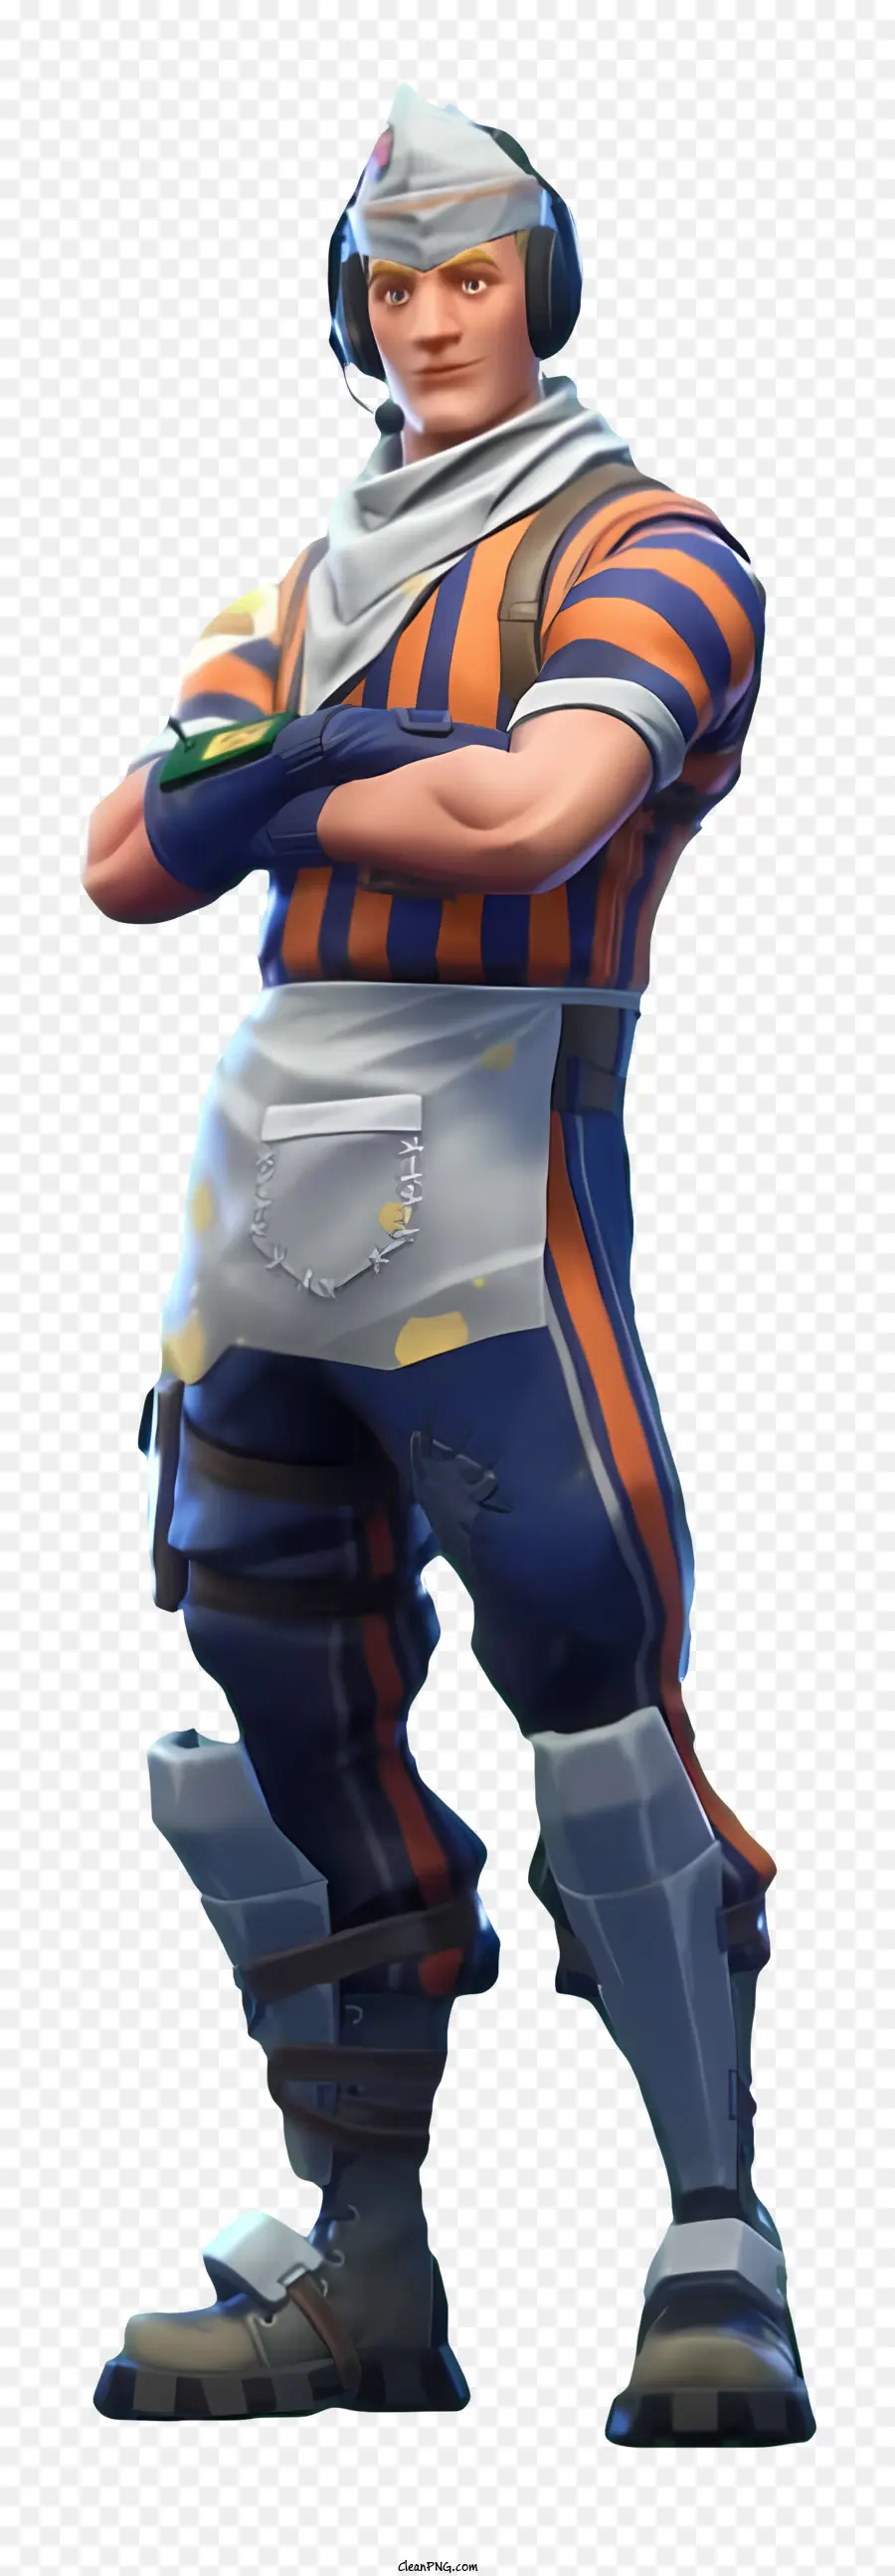 Fortnite - Outfit uomo in blu e arancione con accessori